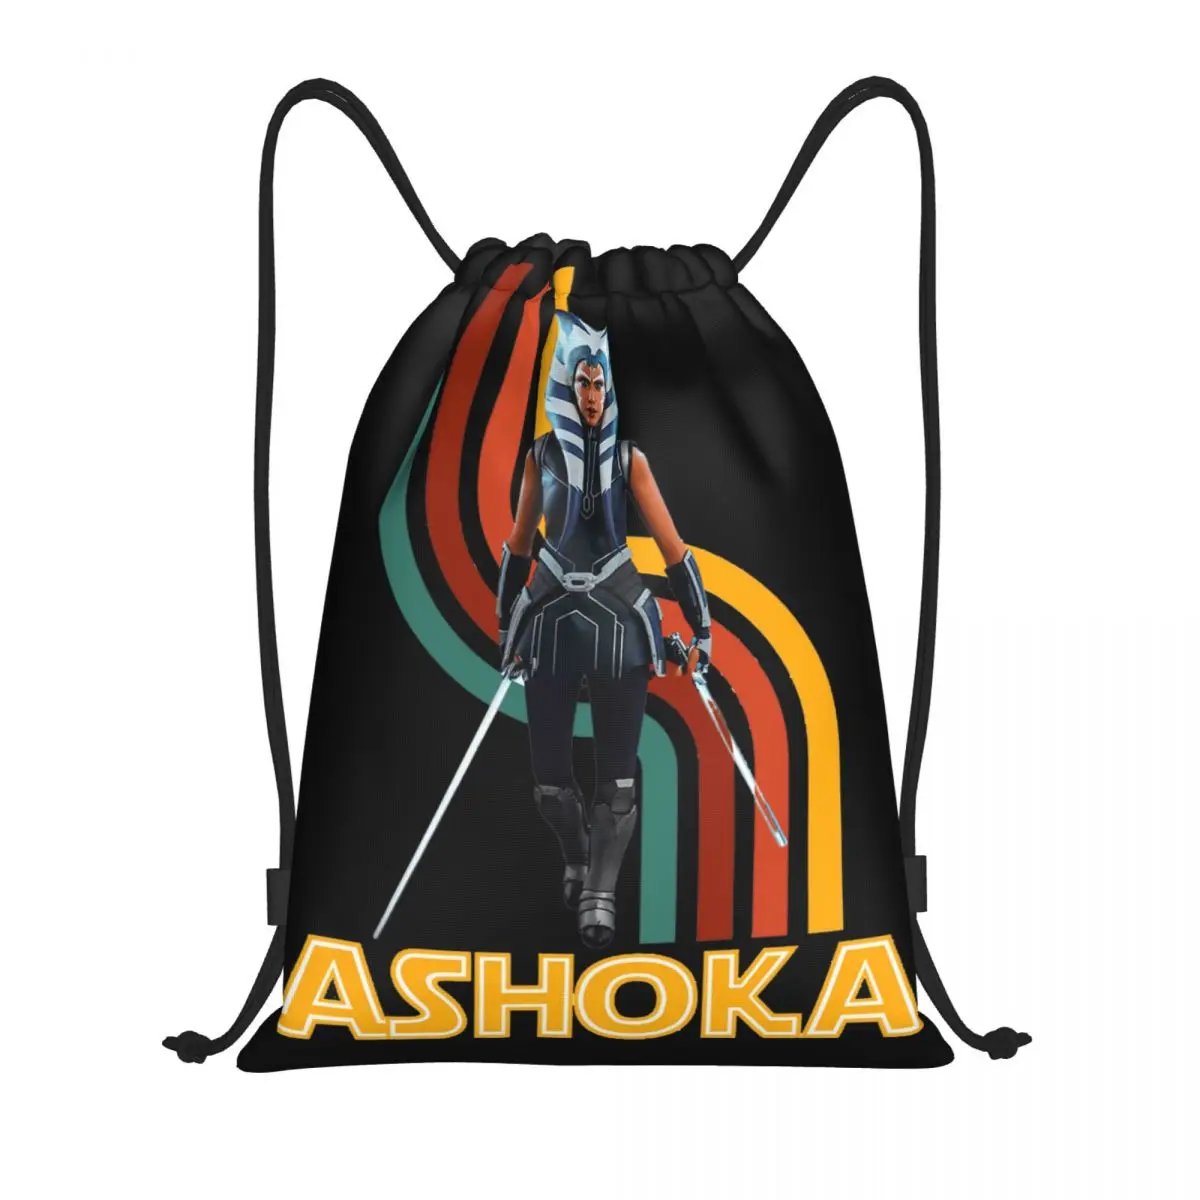 

Уникальный рюкзак ASHOKA SILLHOUTE 18 дюймов, ранцевый рюкзак для ботаника, сумки на шнурке, сумка для спортзала, ранцы